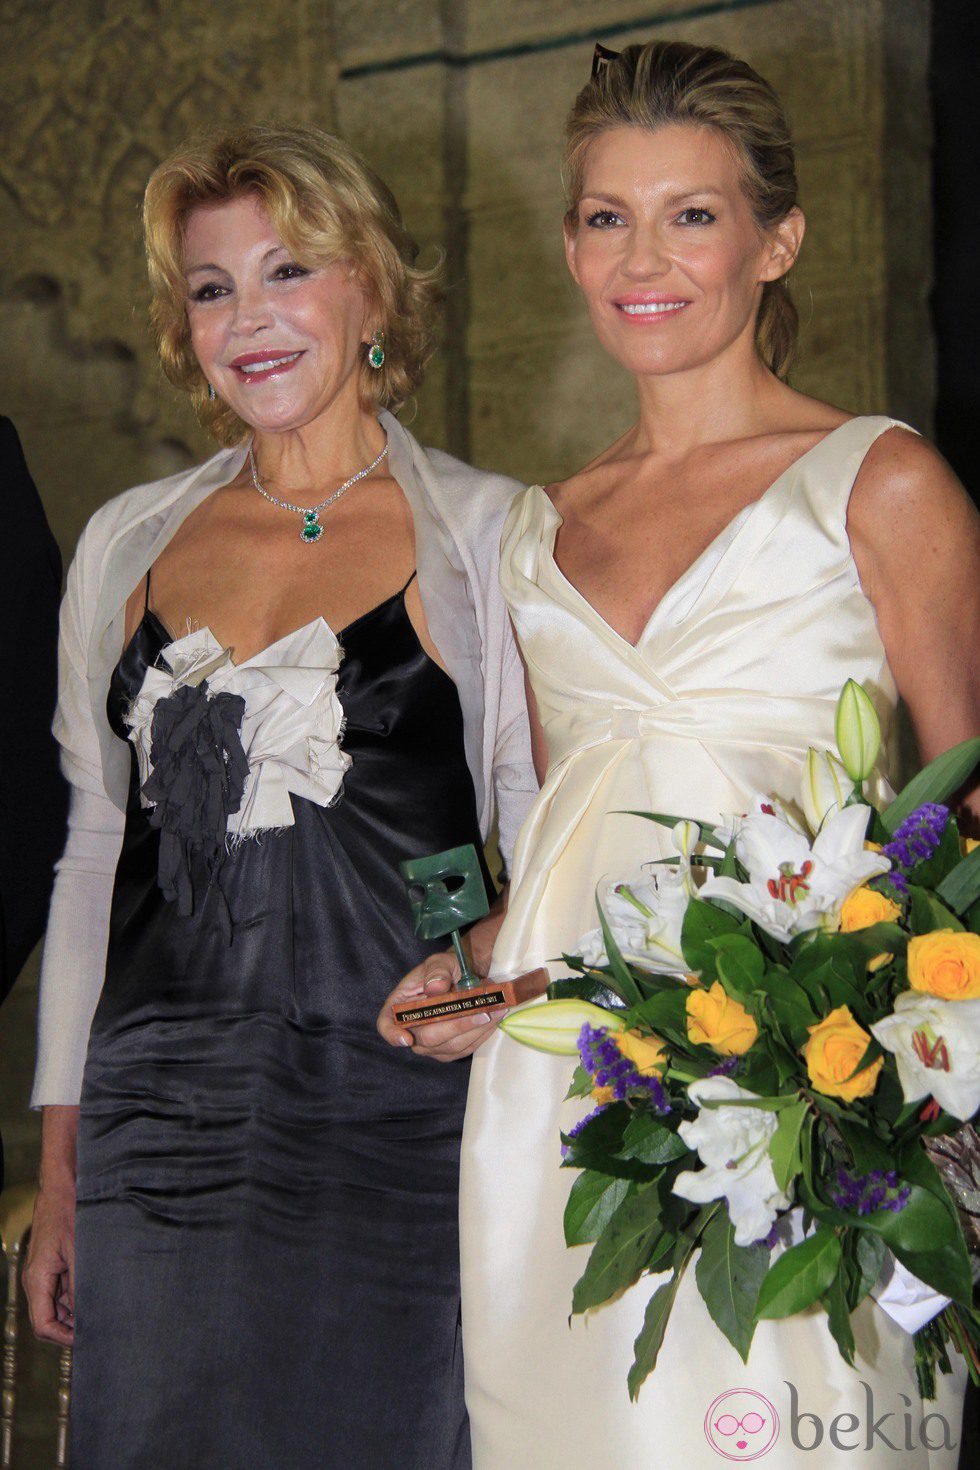 La Baronesa Thyssen y Patricia Rato en los Premios Escaparate 2011